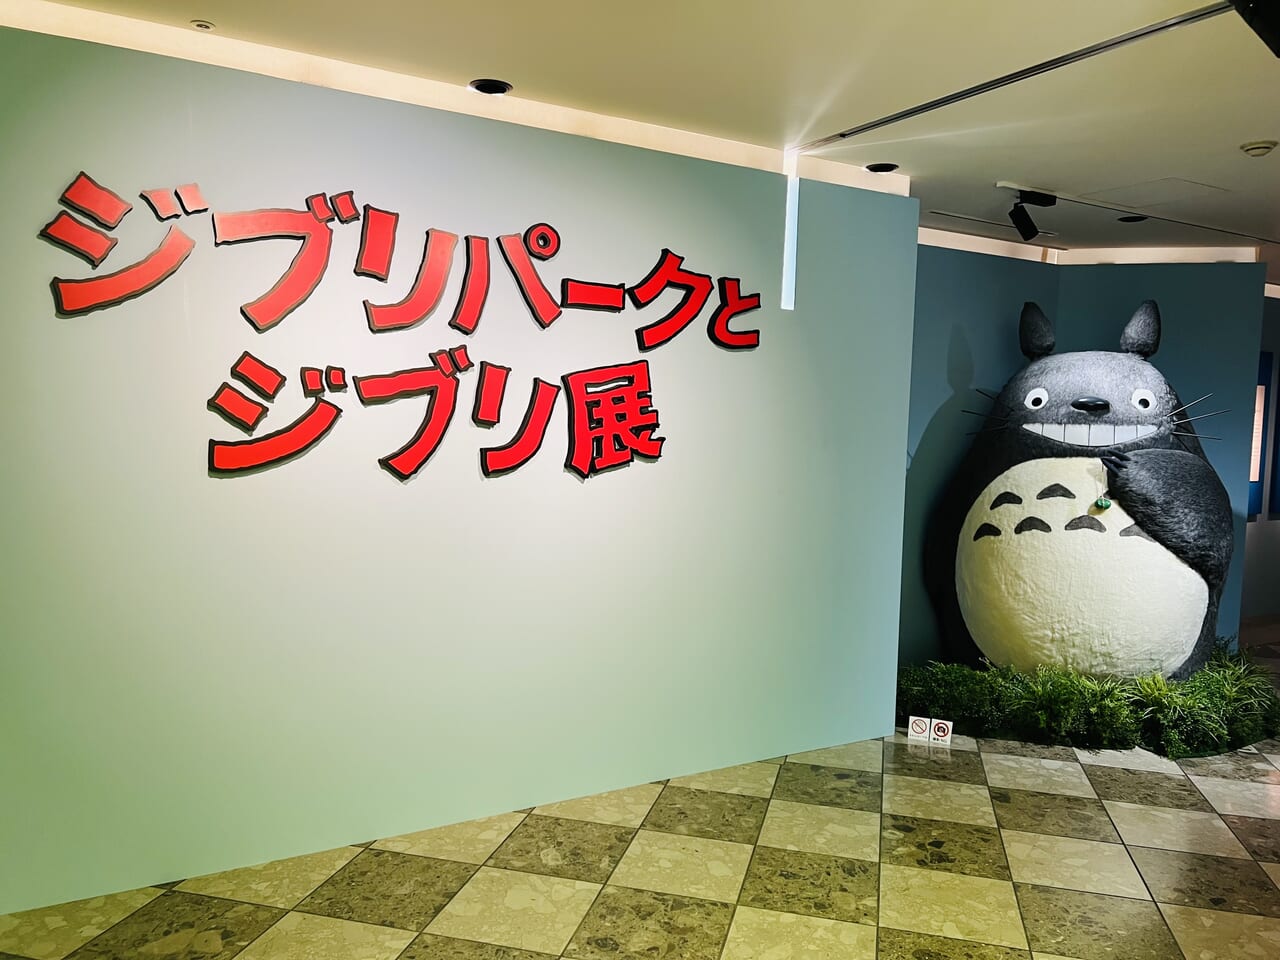 「高知県立美術館」で開催された「ジブリパークとジブリ展」の入り口